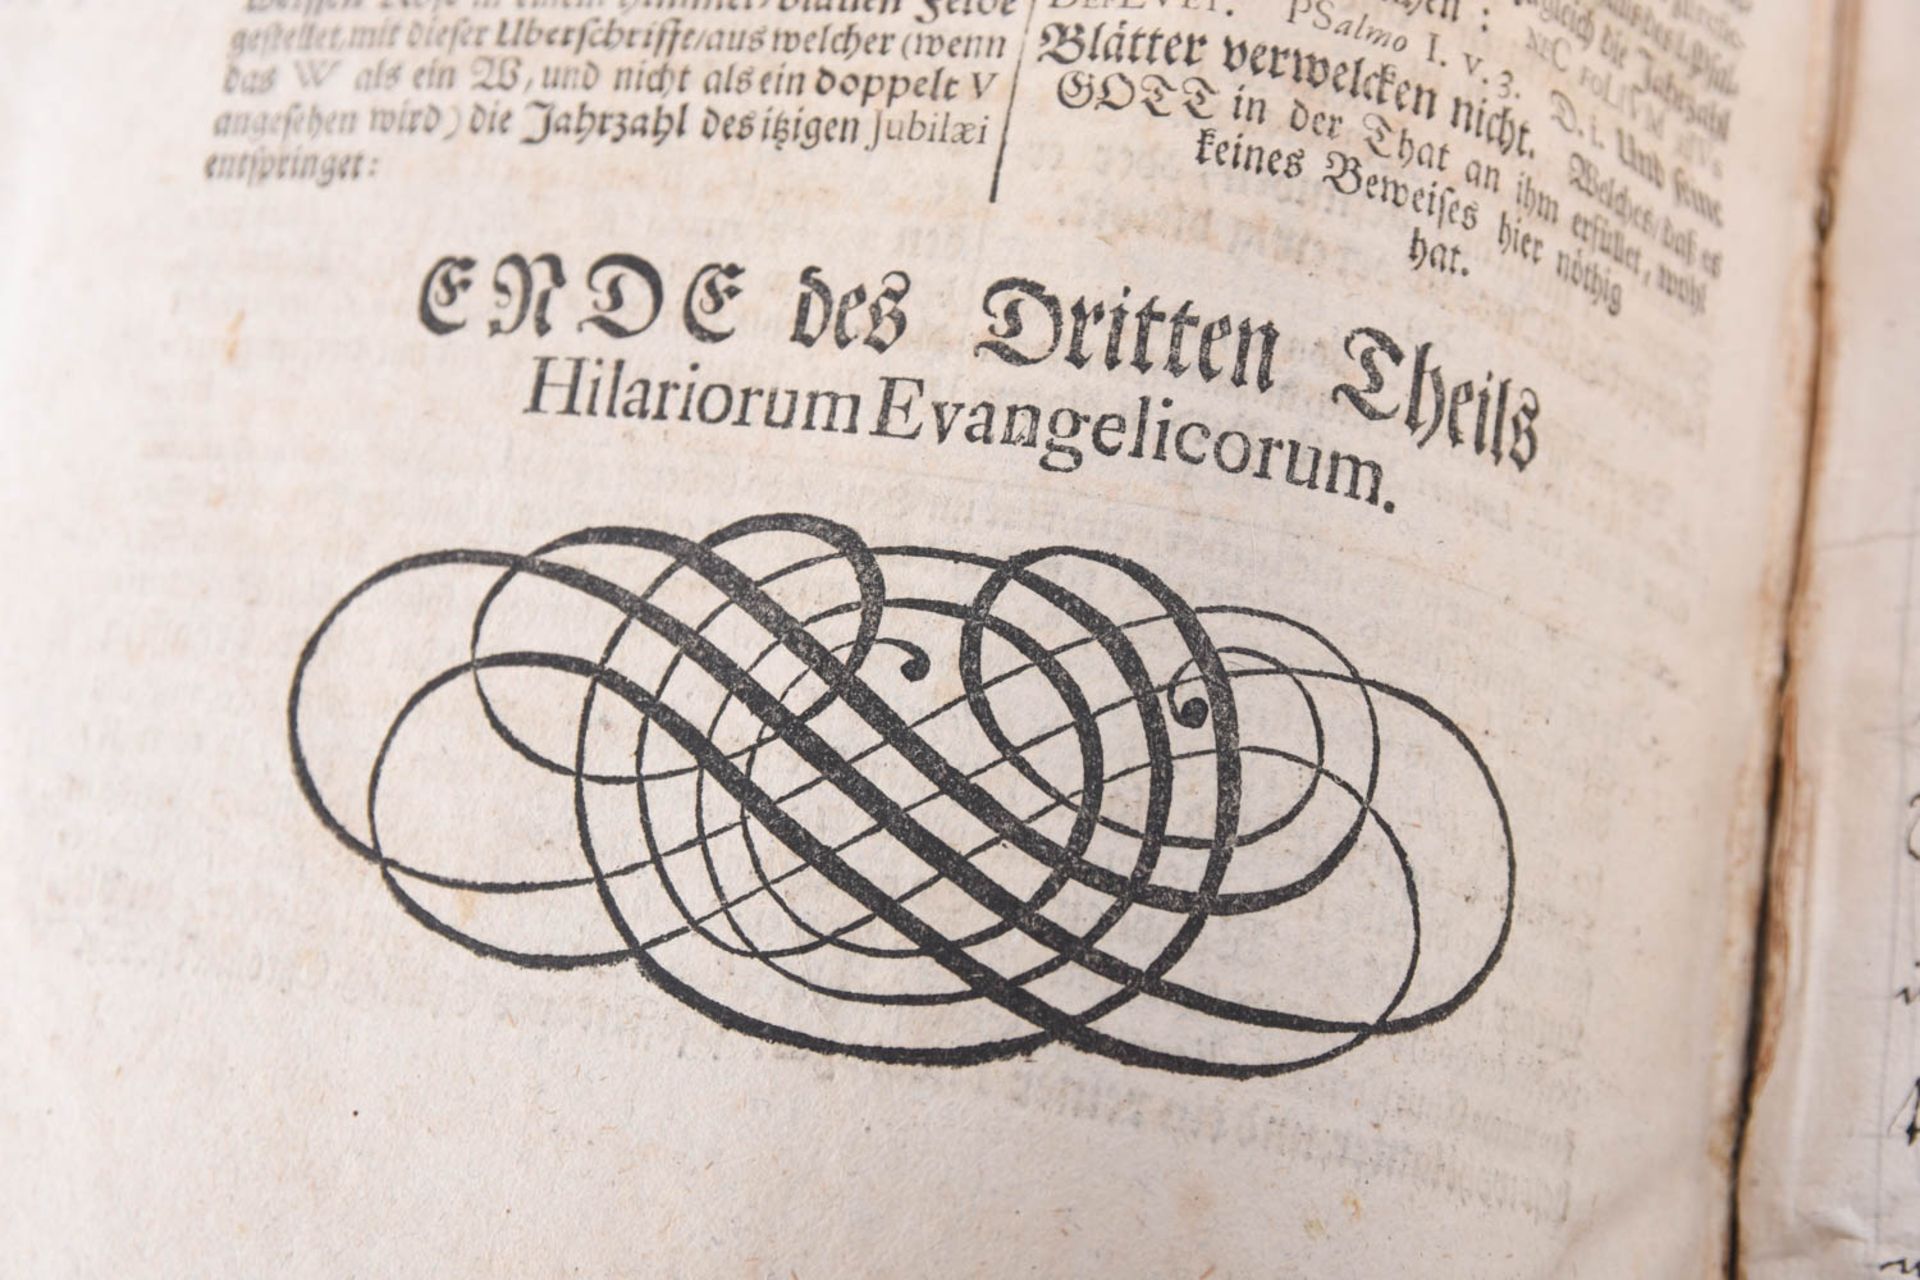 Hilaria Evangelica, 1719 - Image 46 of 47